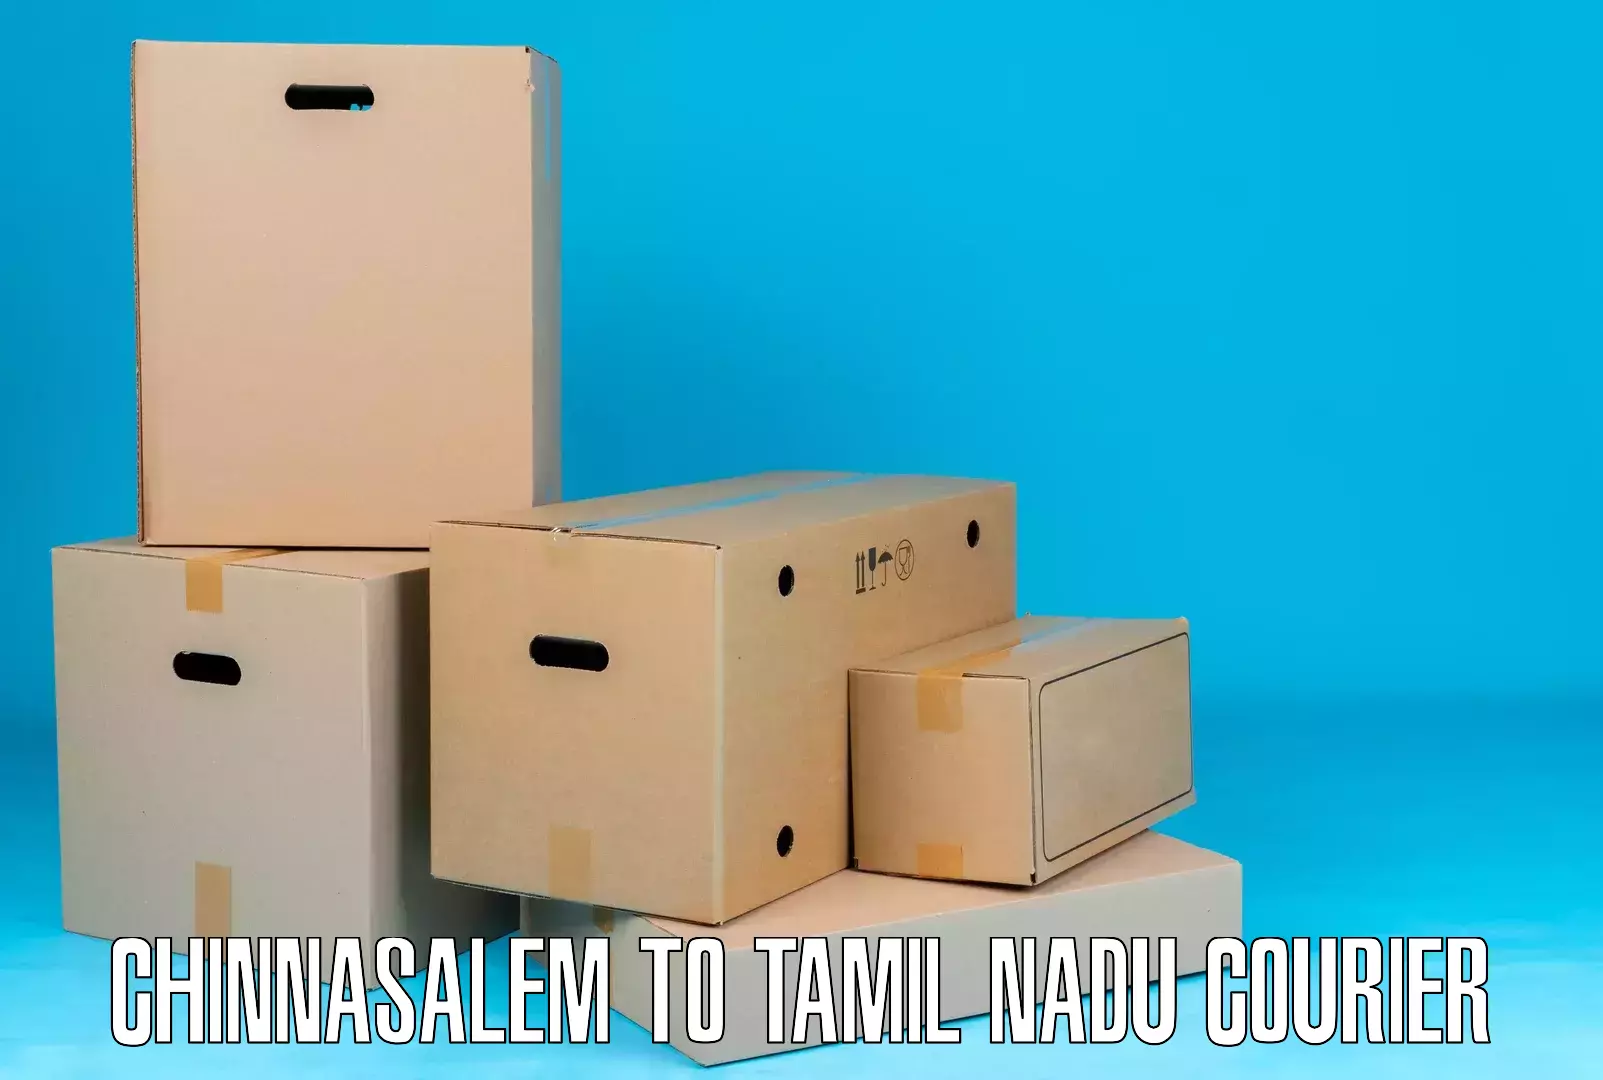 Express courier facilities Chinnasalem to Tamil Nadu